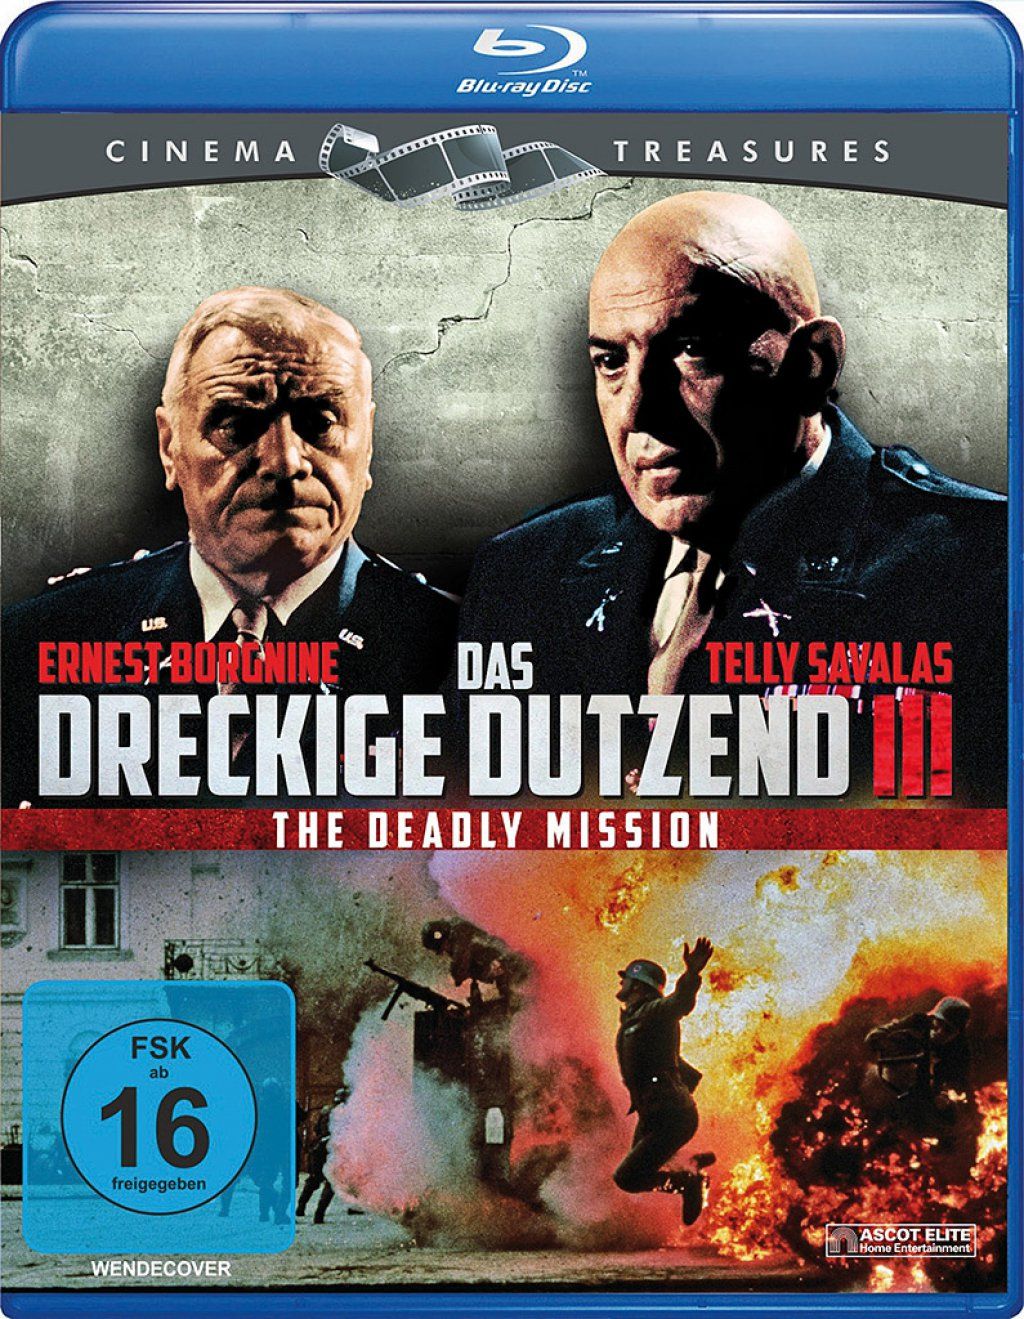 Dreckige Dutzend 3, Das - The Deadly Mission (BLURAY)